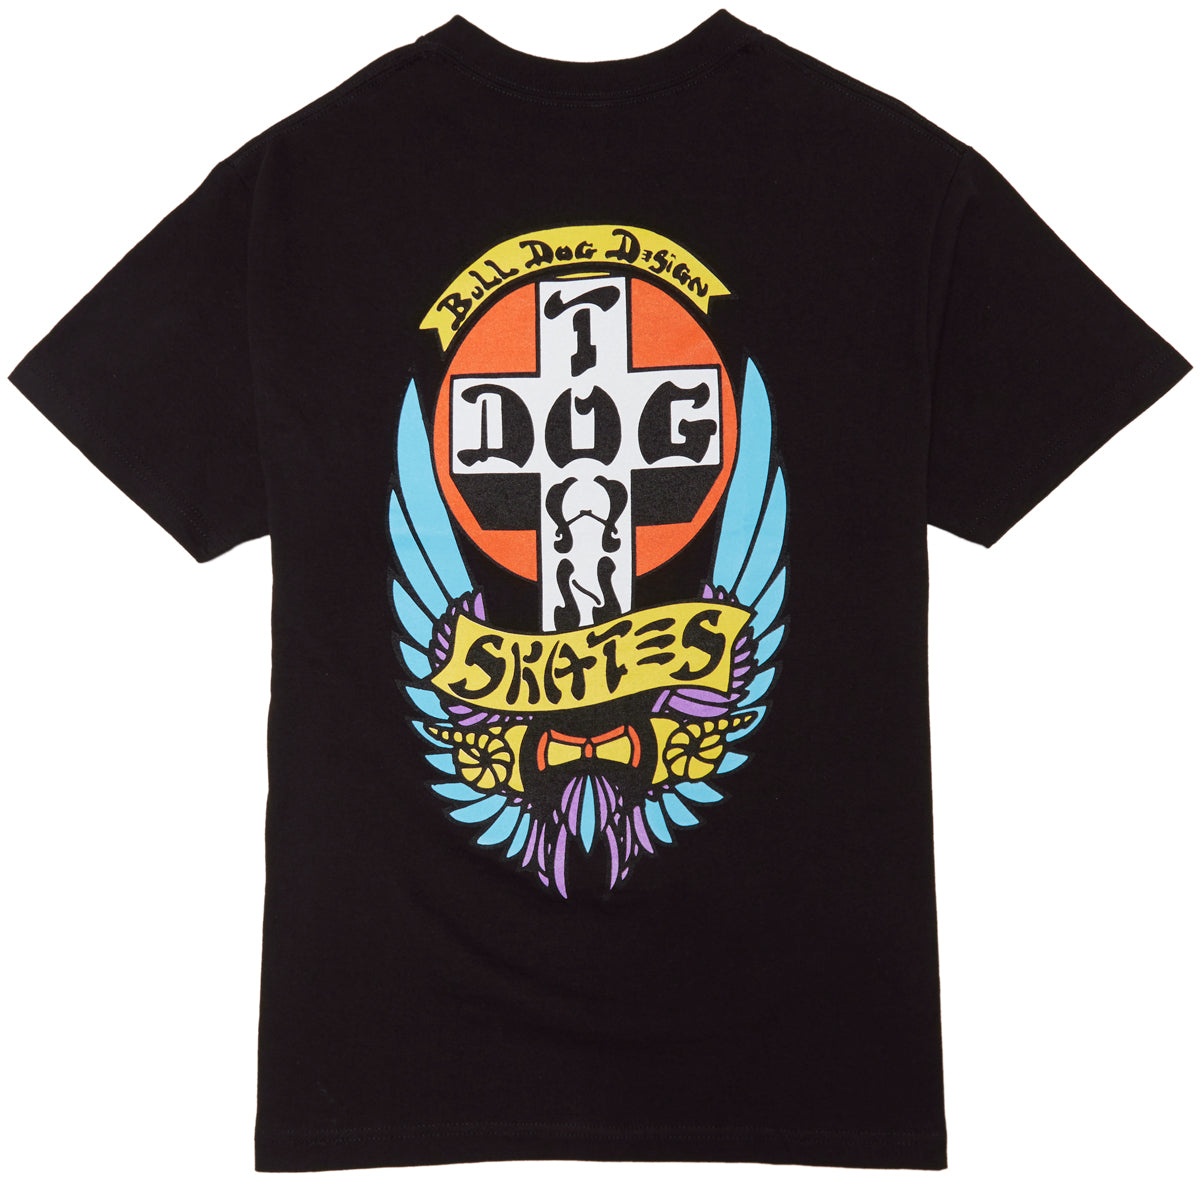 Dogtown OG Bull Dog T-Shirt - Black image 1